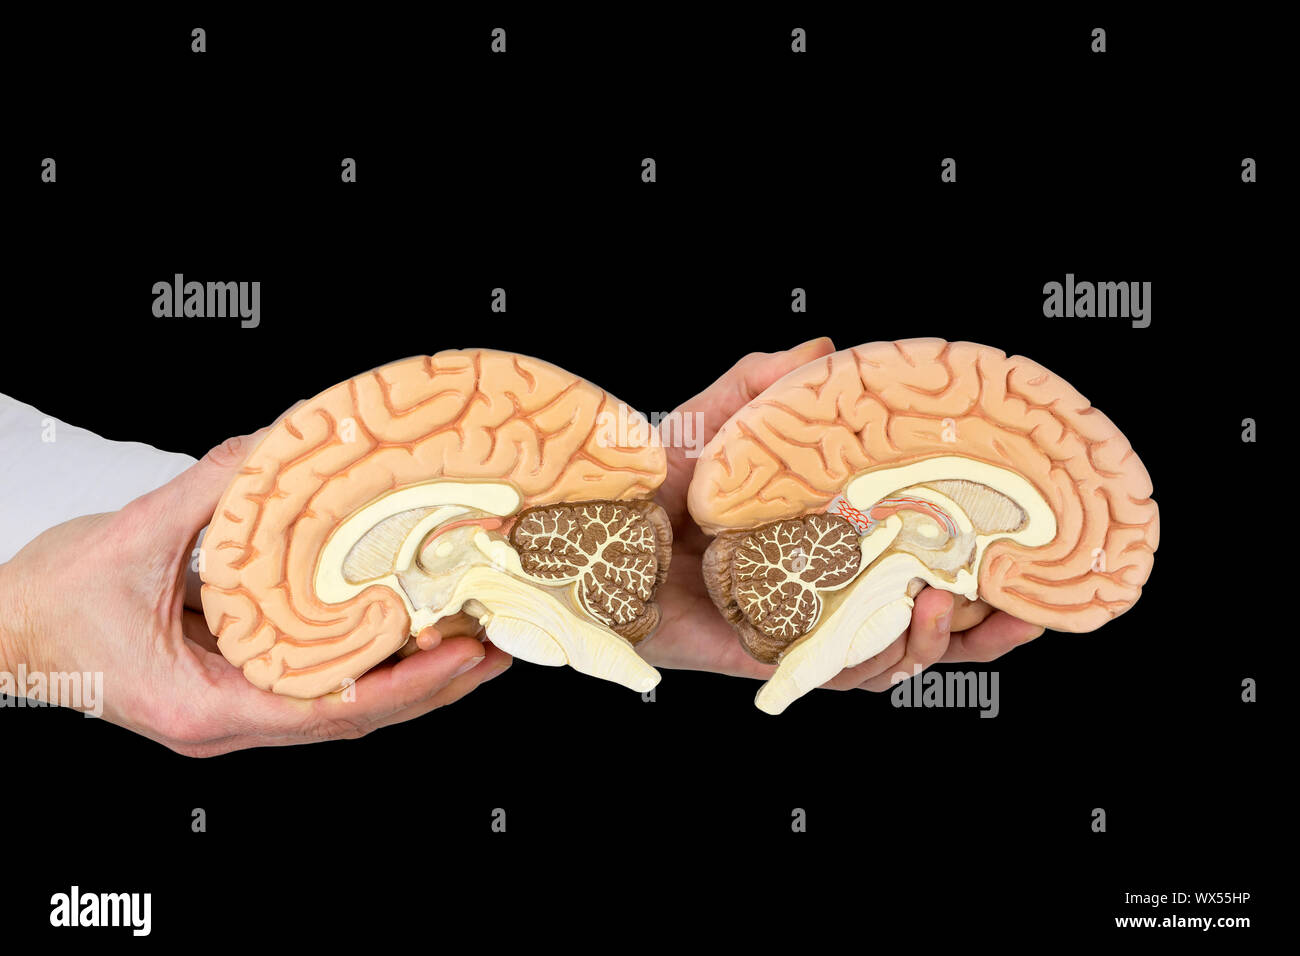 Hände halten Modell menschlichen Gehirne auf schwarzem Hintergrund Stockfoto